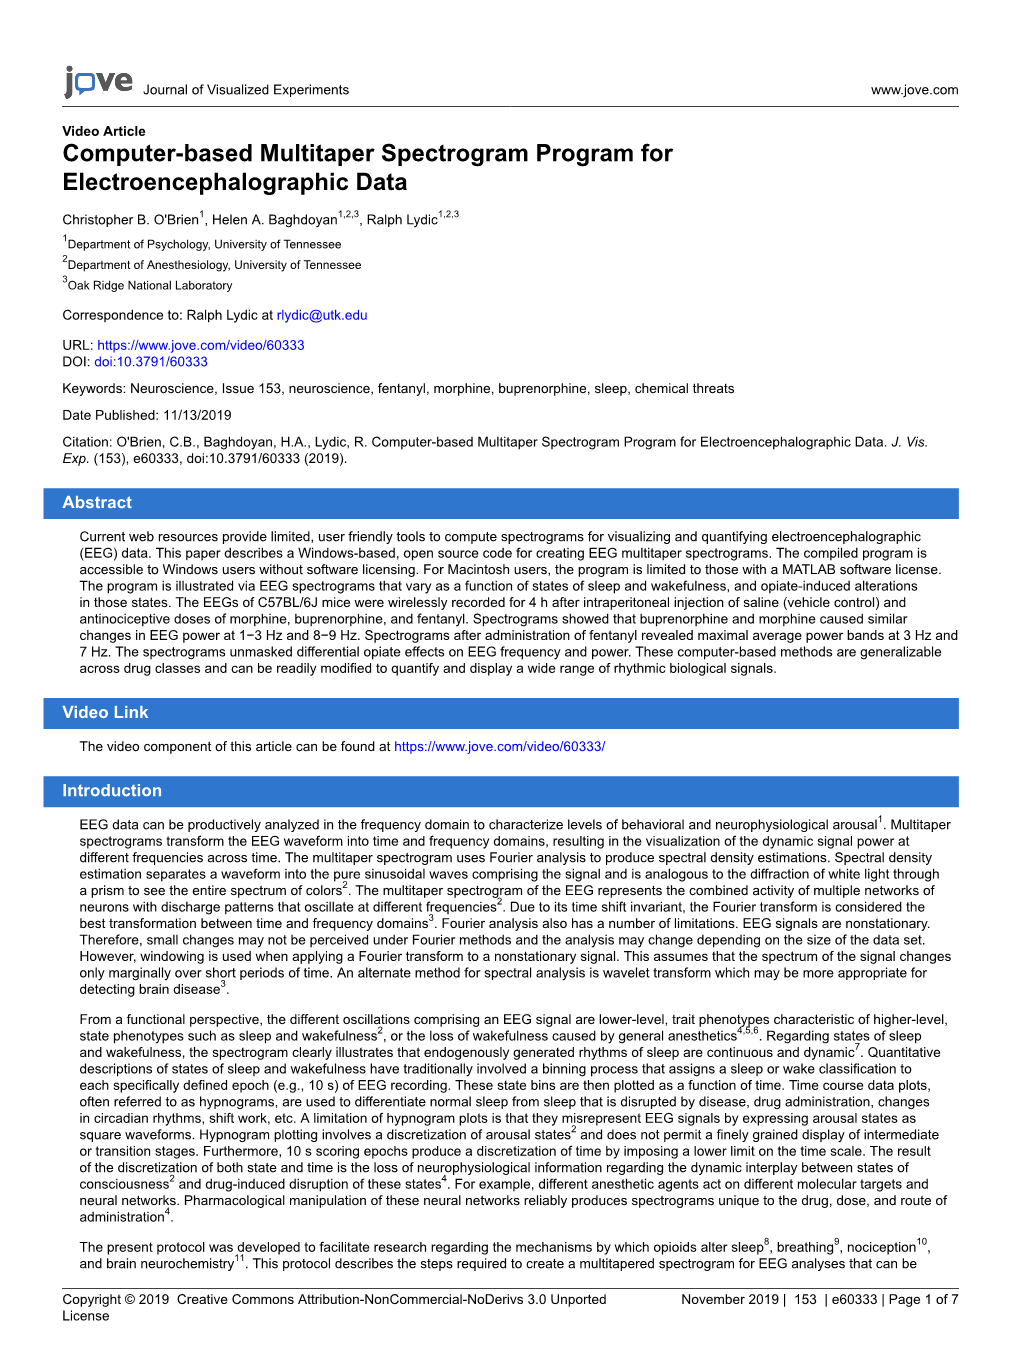 Computer-Based Multitaper Spectrogram Program for Electroencephalographic Data